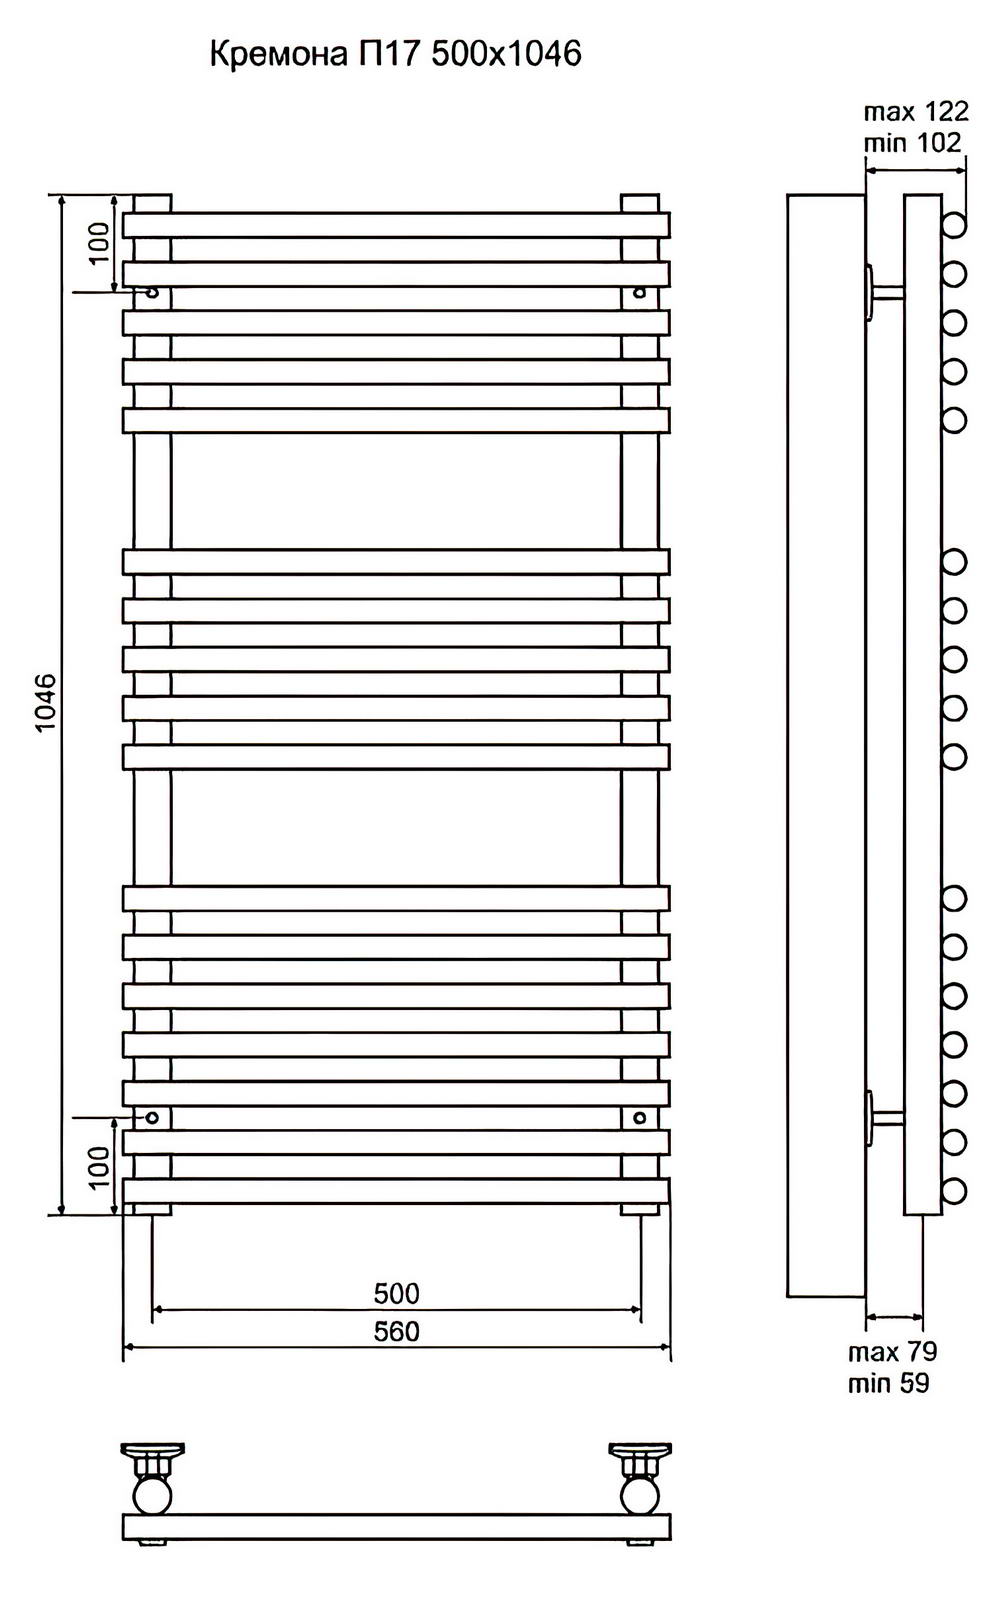 Terminus Кремона П17 Полотенцесушитель электрический 500x1046, ТЭН HT-1 300W (левый/правый)